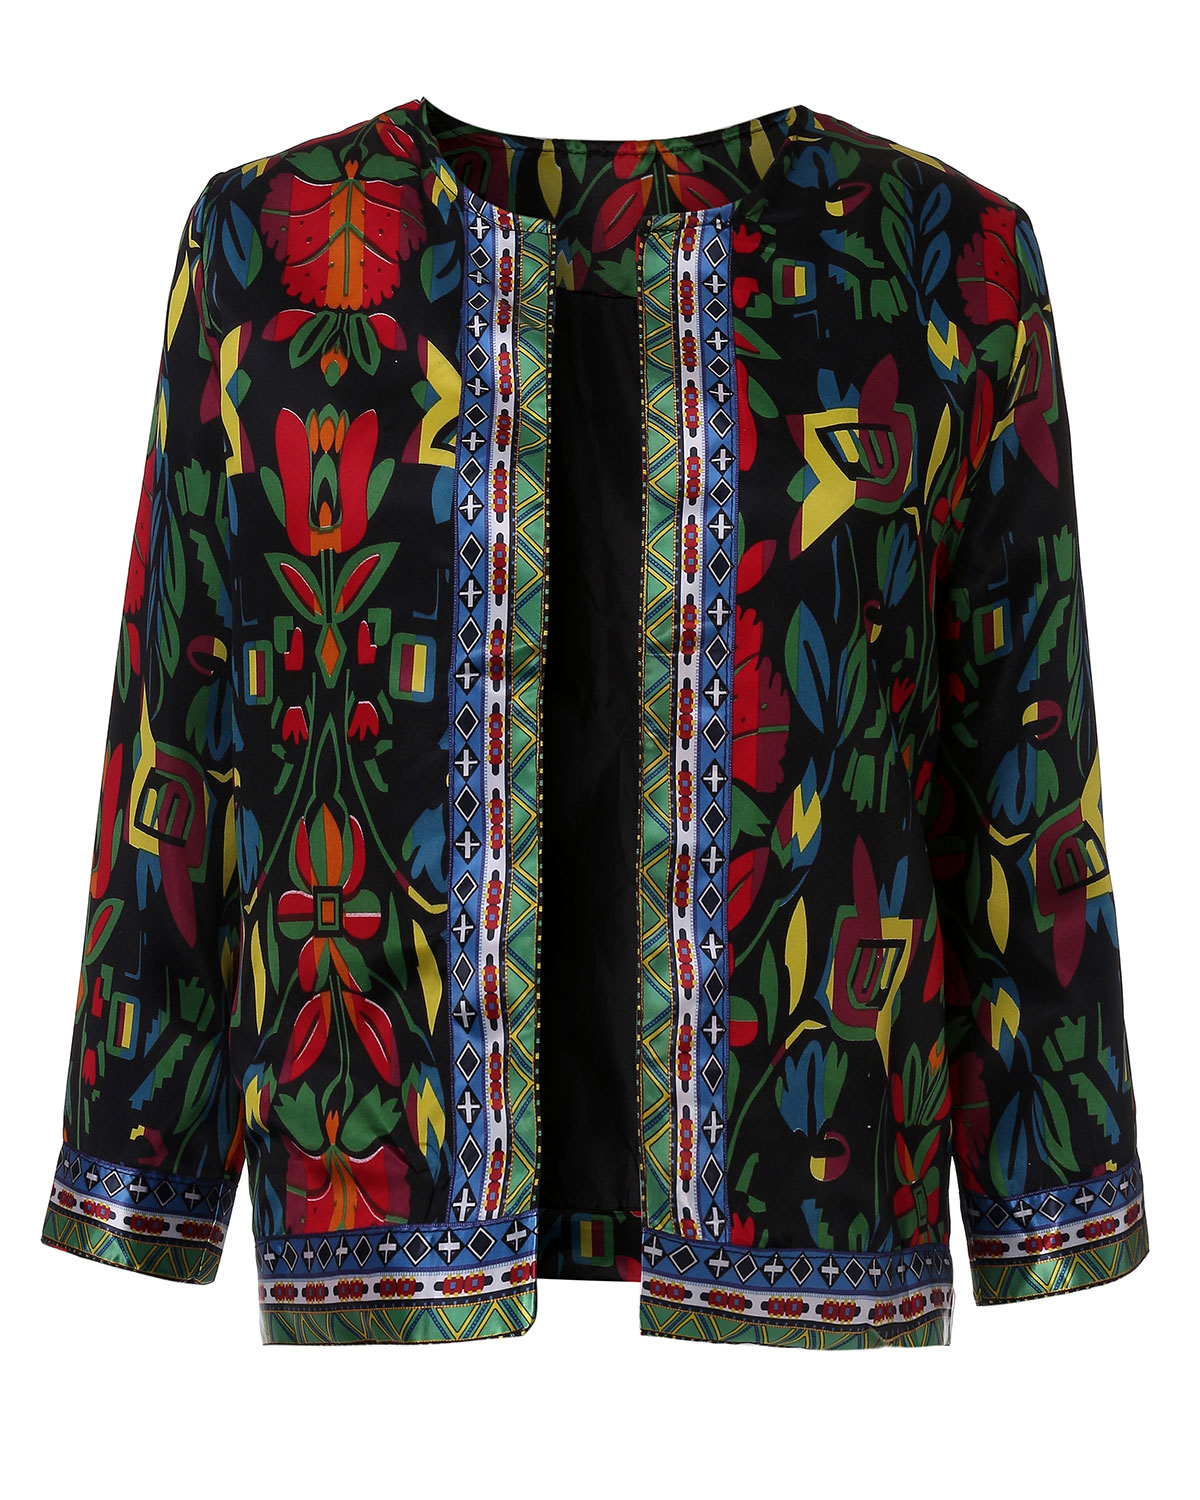 2015 Vintage Women Ethnic Floral Print Embroidered Short Jacket Coat ...